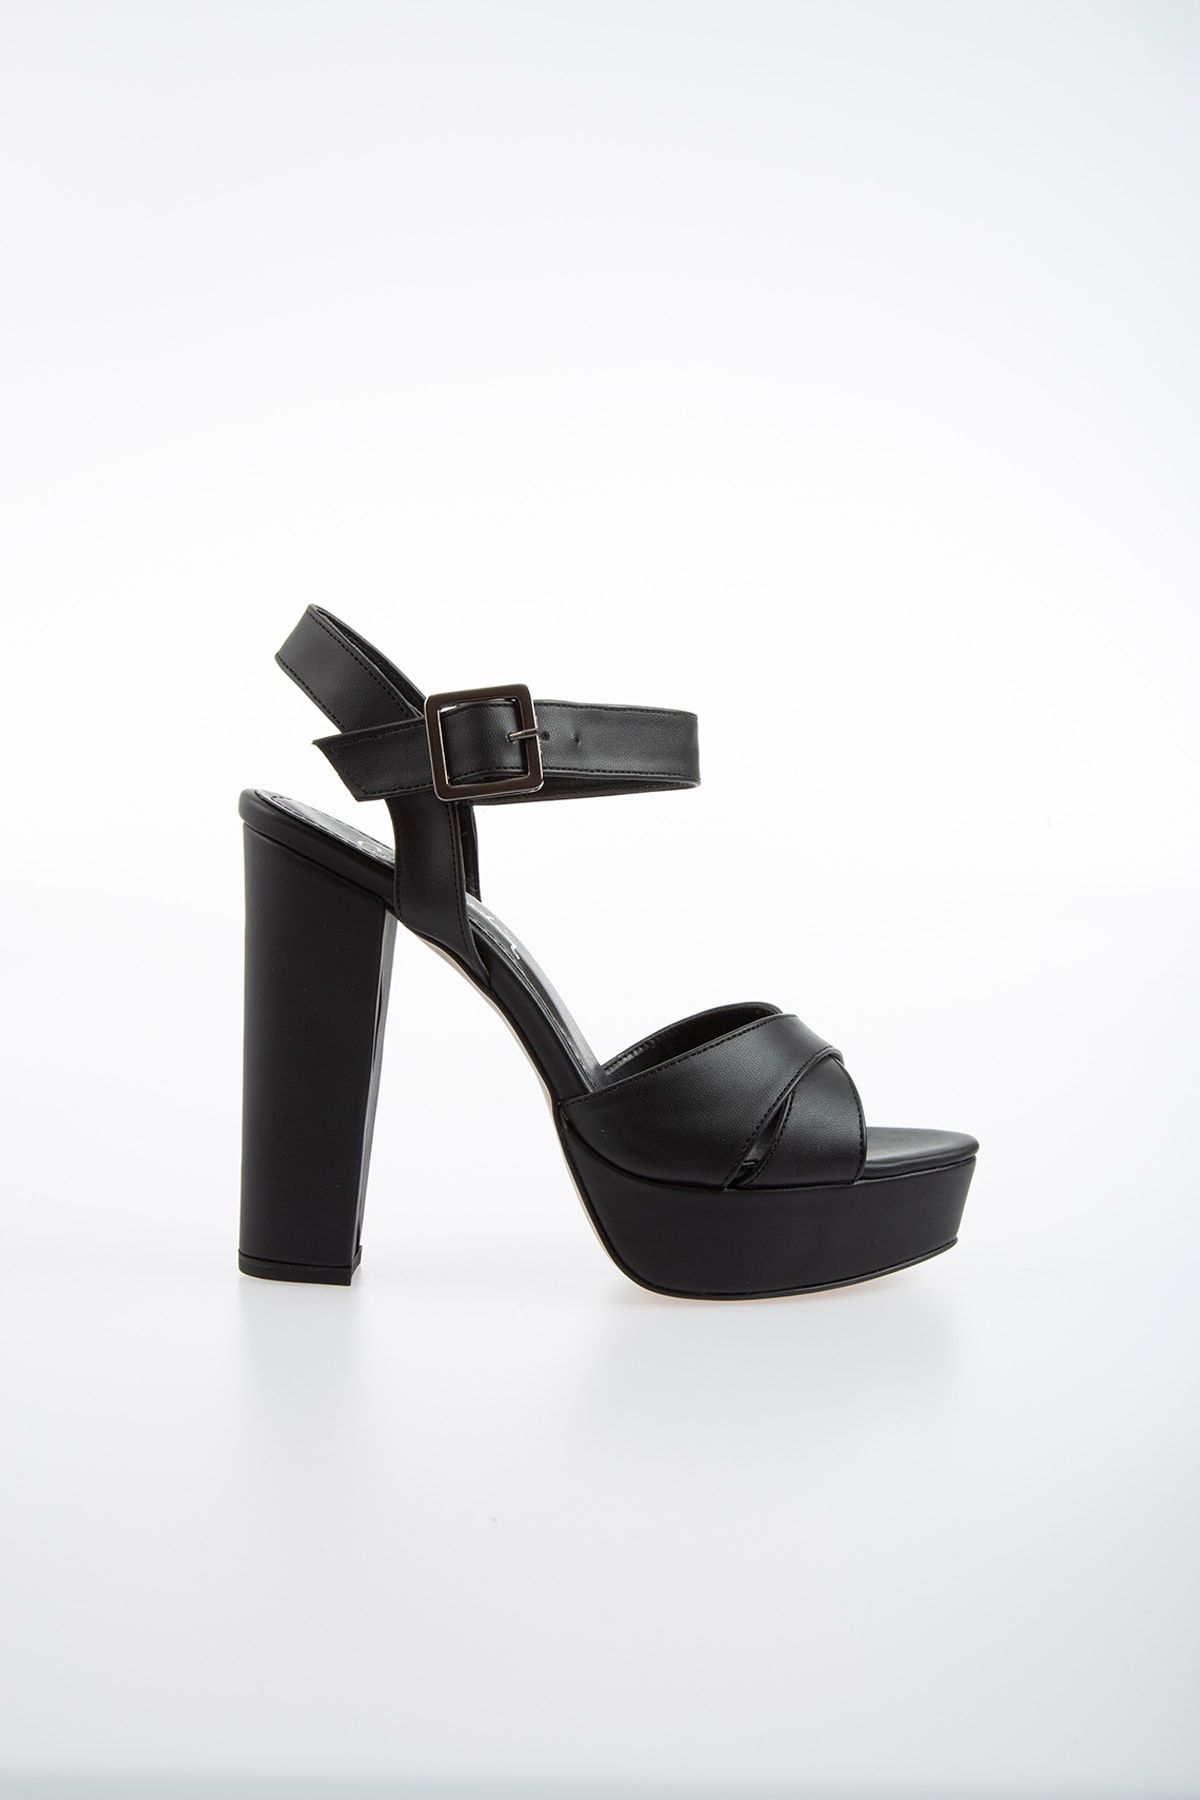 Pierre Cardin Pc-50165 Siyah Kadın Ayakkabı